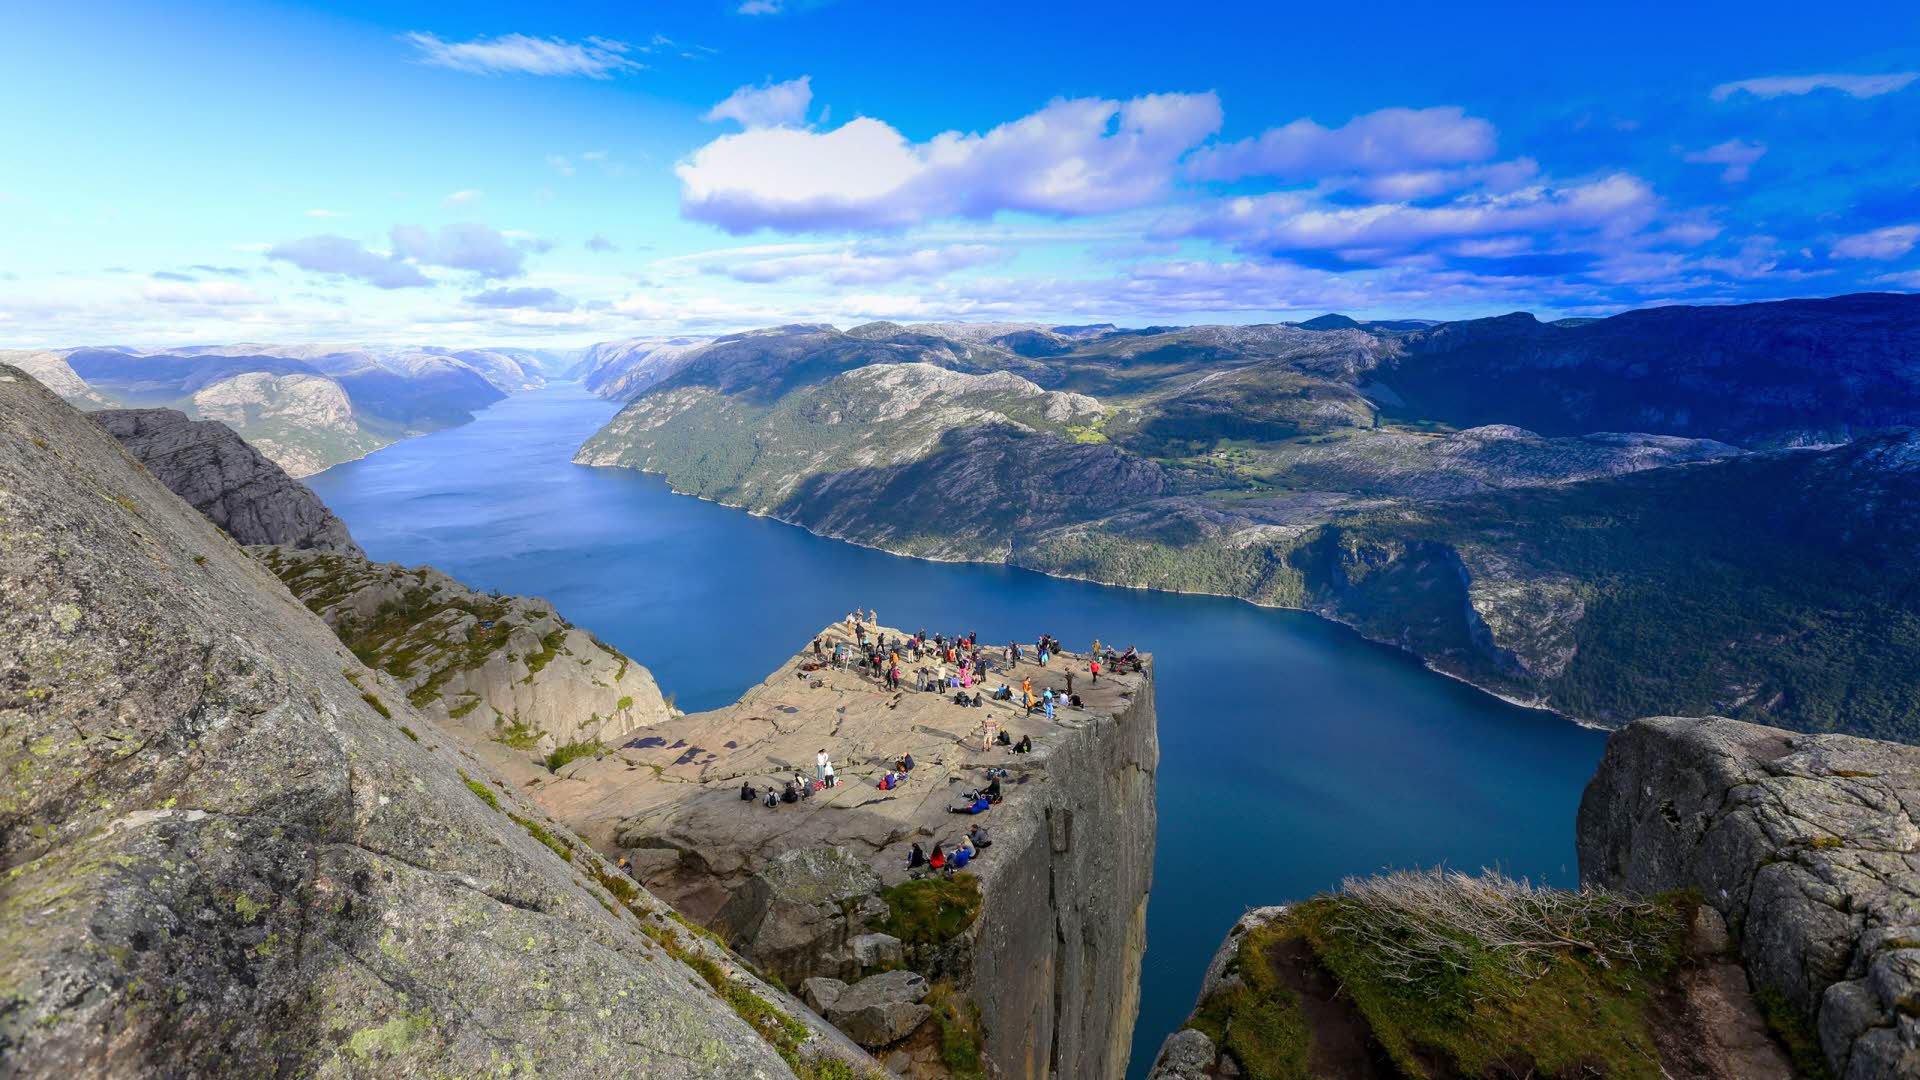 Vue panoramique d’au-dessus du Pulpit Rock, une foule de gens se tenant debout près du bord. On peut voir le Lysefjord s’étendant à l’infini